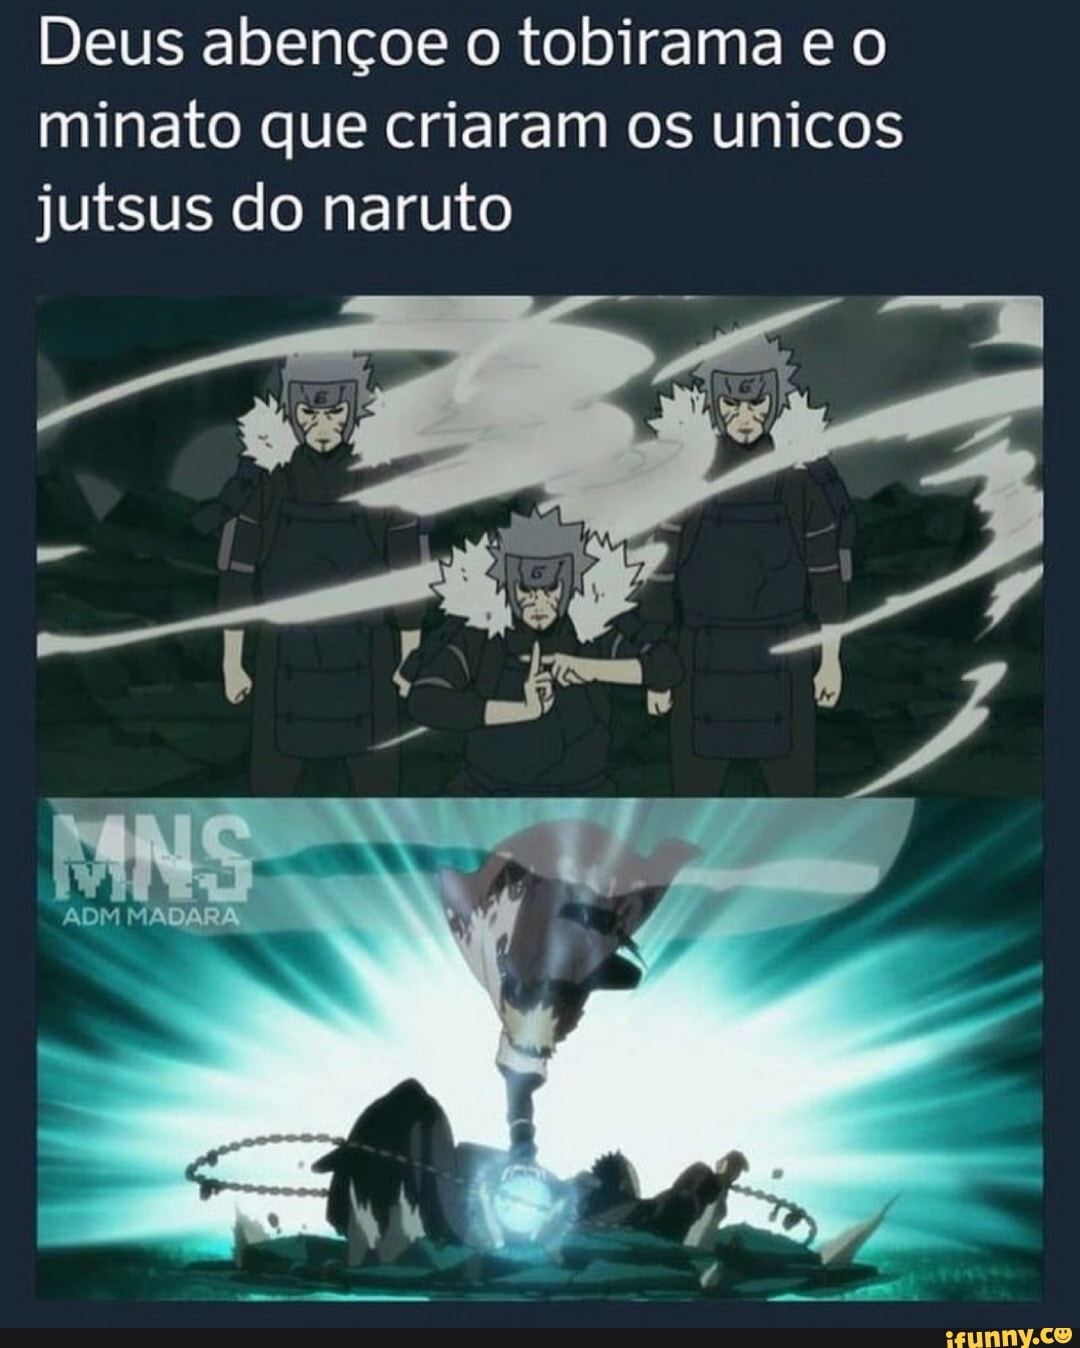 Se o Naruto virou Hokage foi graças ao Minato e o Tobirama que criaram os  únicos dois jutsus que ele usou no anime inteiro - iFunny Brazil